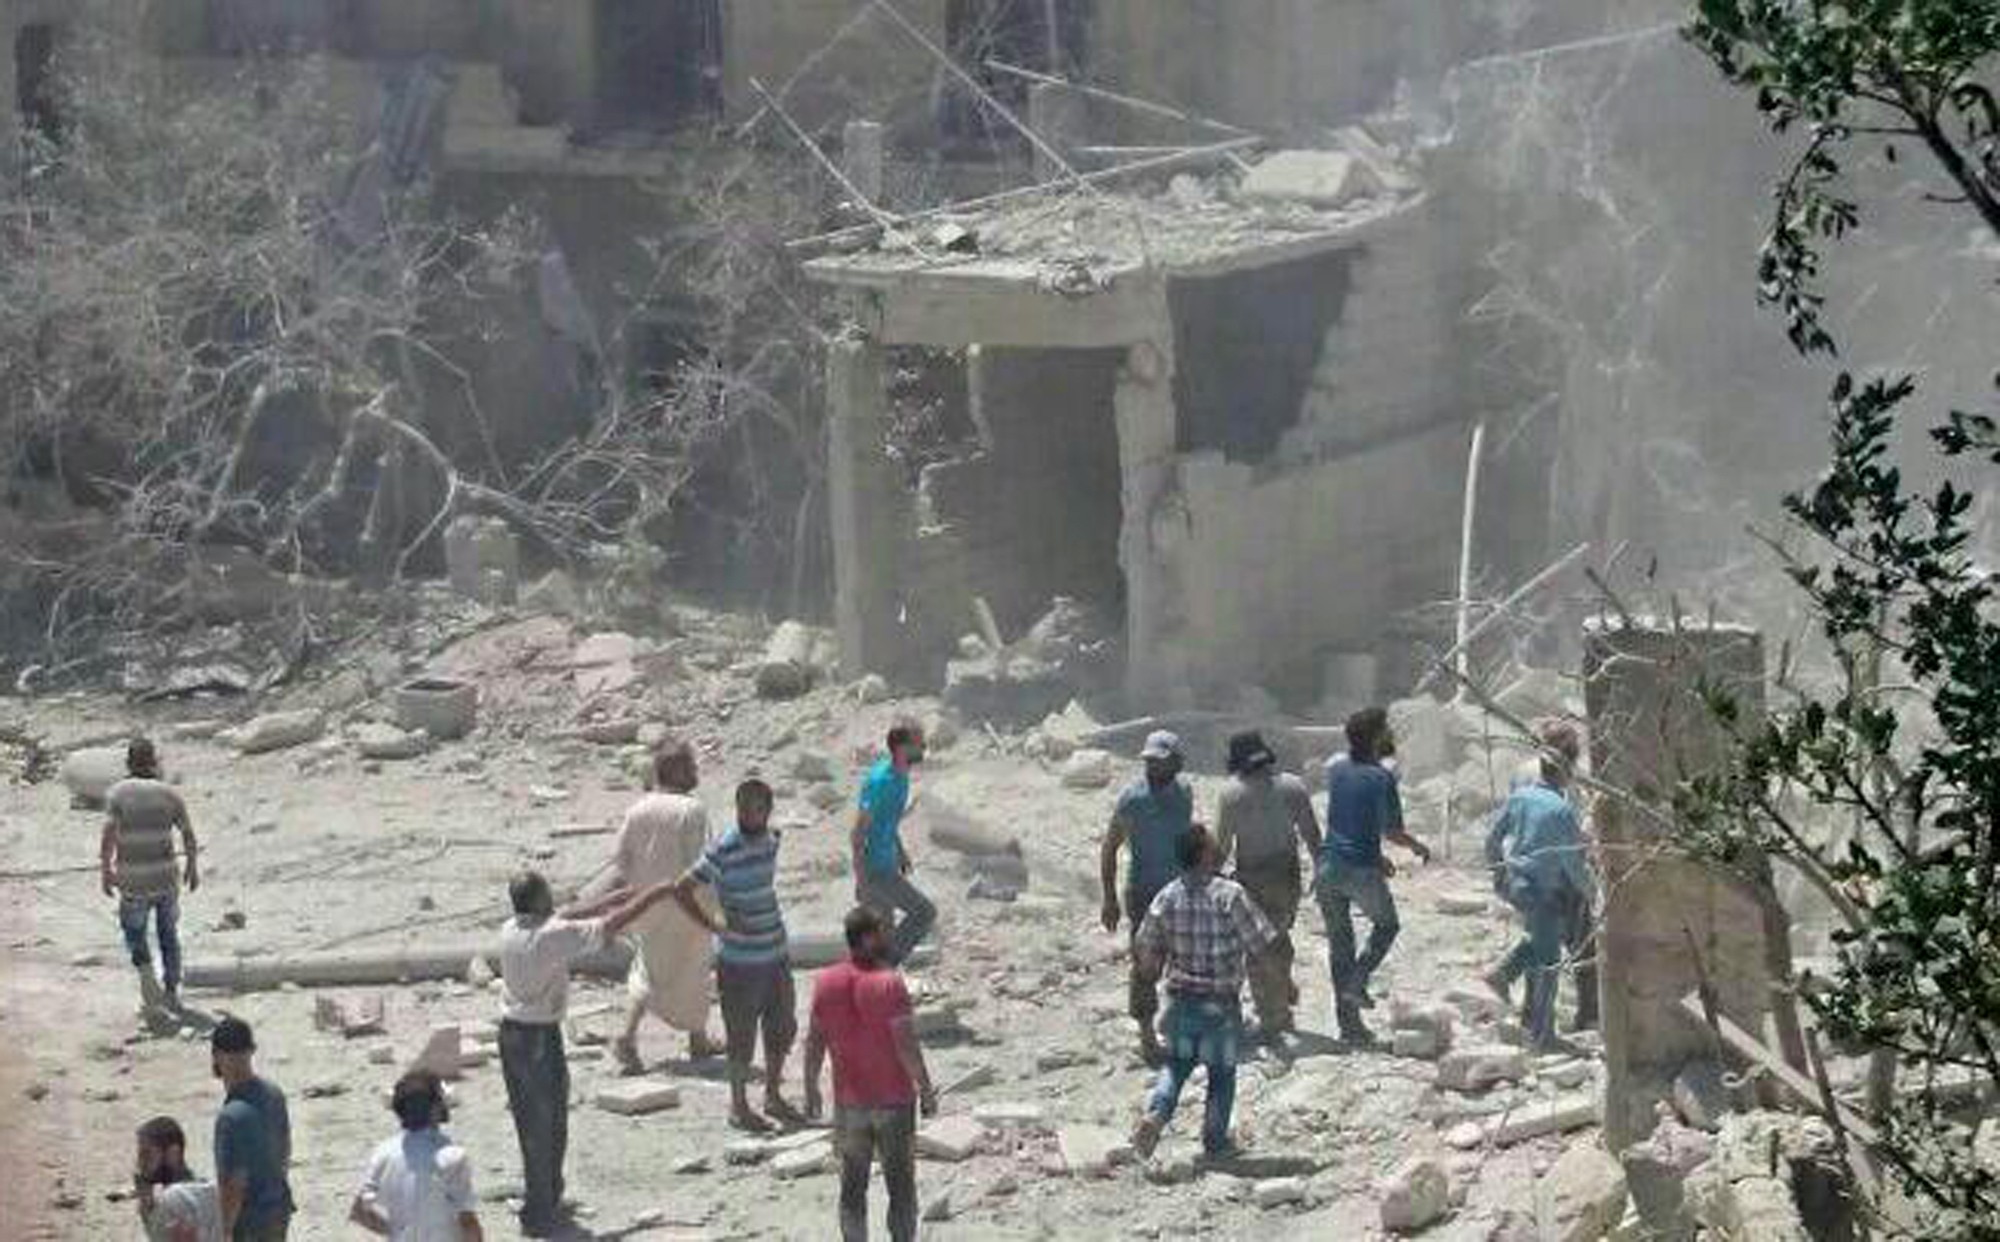 Imagem divulgada pela ONG Save The Children mostra maternidade que foi bombardeada nesta sexta-feira (29) em Idlib, no norte da Síria (Foto: Save The Children via AP)